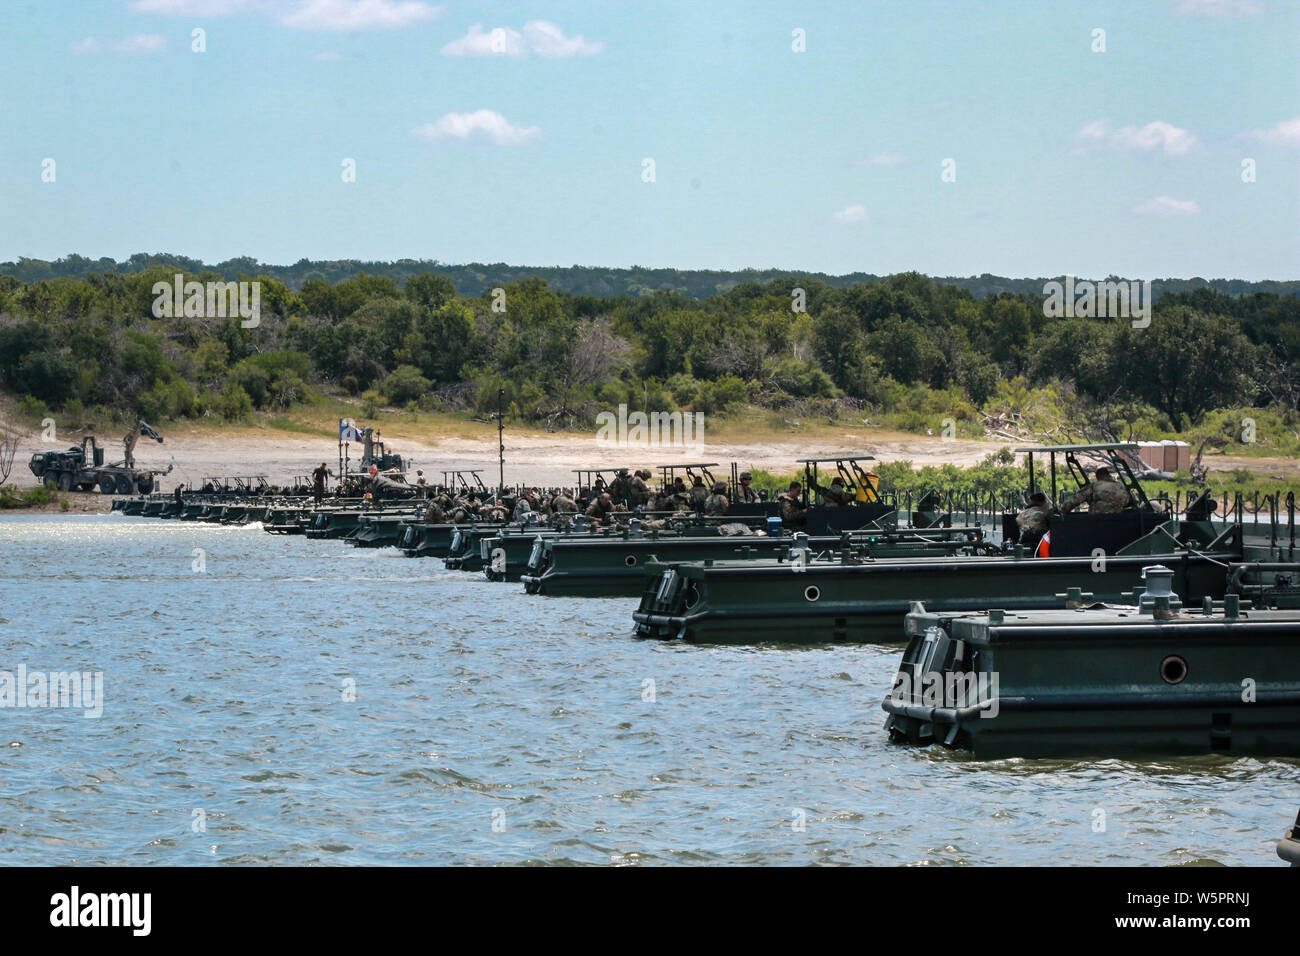 Servizio attivo dei soldati, soldati di riserva e riserva Marines hanno lavorato per più di quattro ore per completare e allegare un 72-bay galleggiante ponte chiamato nastro migliorate ponte (IRB) sul Lago Belton, durante le operazioni di ponte a Ft. Cappa, Texas a sostegno dell'esercizio fiume Assault 19 sulla luglio 23, 2019. L'IRB è un galleggiante, sistema pieghevole di chiatte che può essere usato come un intero intervallo bridge o traghetto veicoli ed attrezzature attraverso un corpo di acqua. Fiume Assault 19 è una chiave U.S. La riserva di esercito di esercizio che è destinato a ingegneri e facilitatori per condurre corsi di formazione specifici per aumentare readin Foto Stock